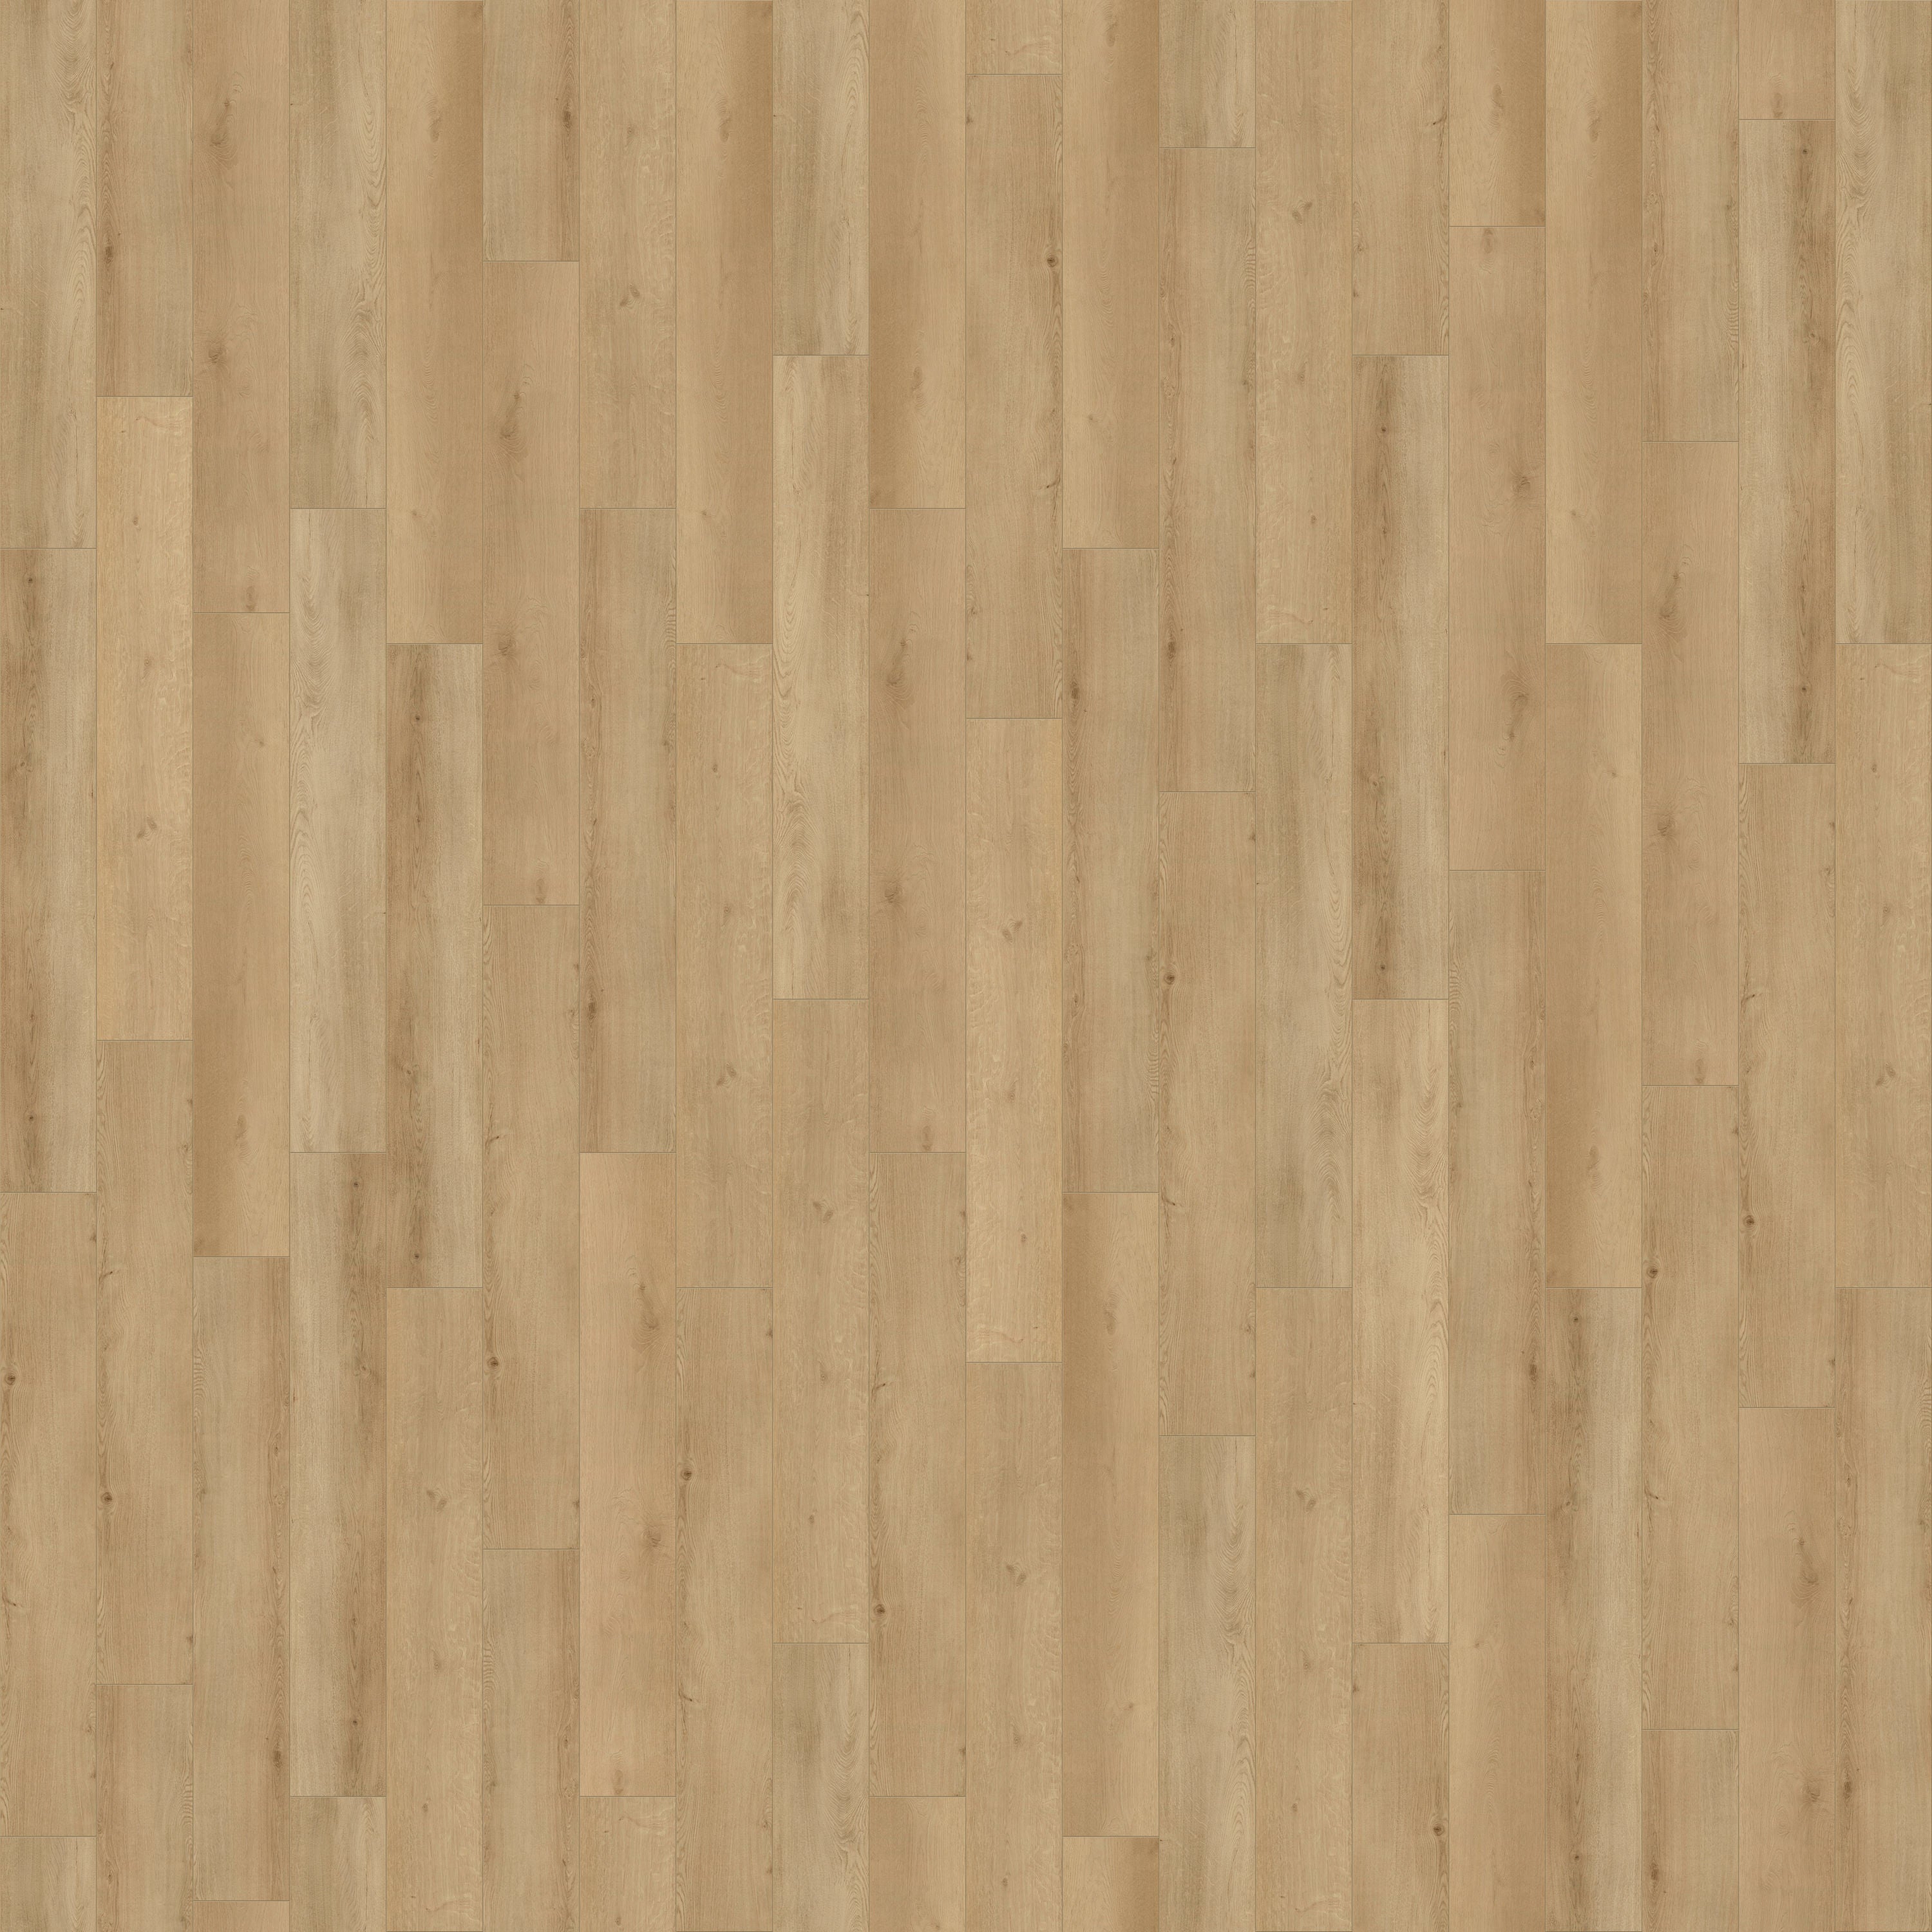 Cali Floors Longboard LVP Flooring - The Green Design Center